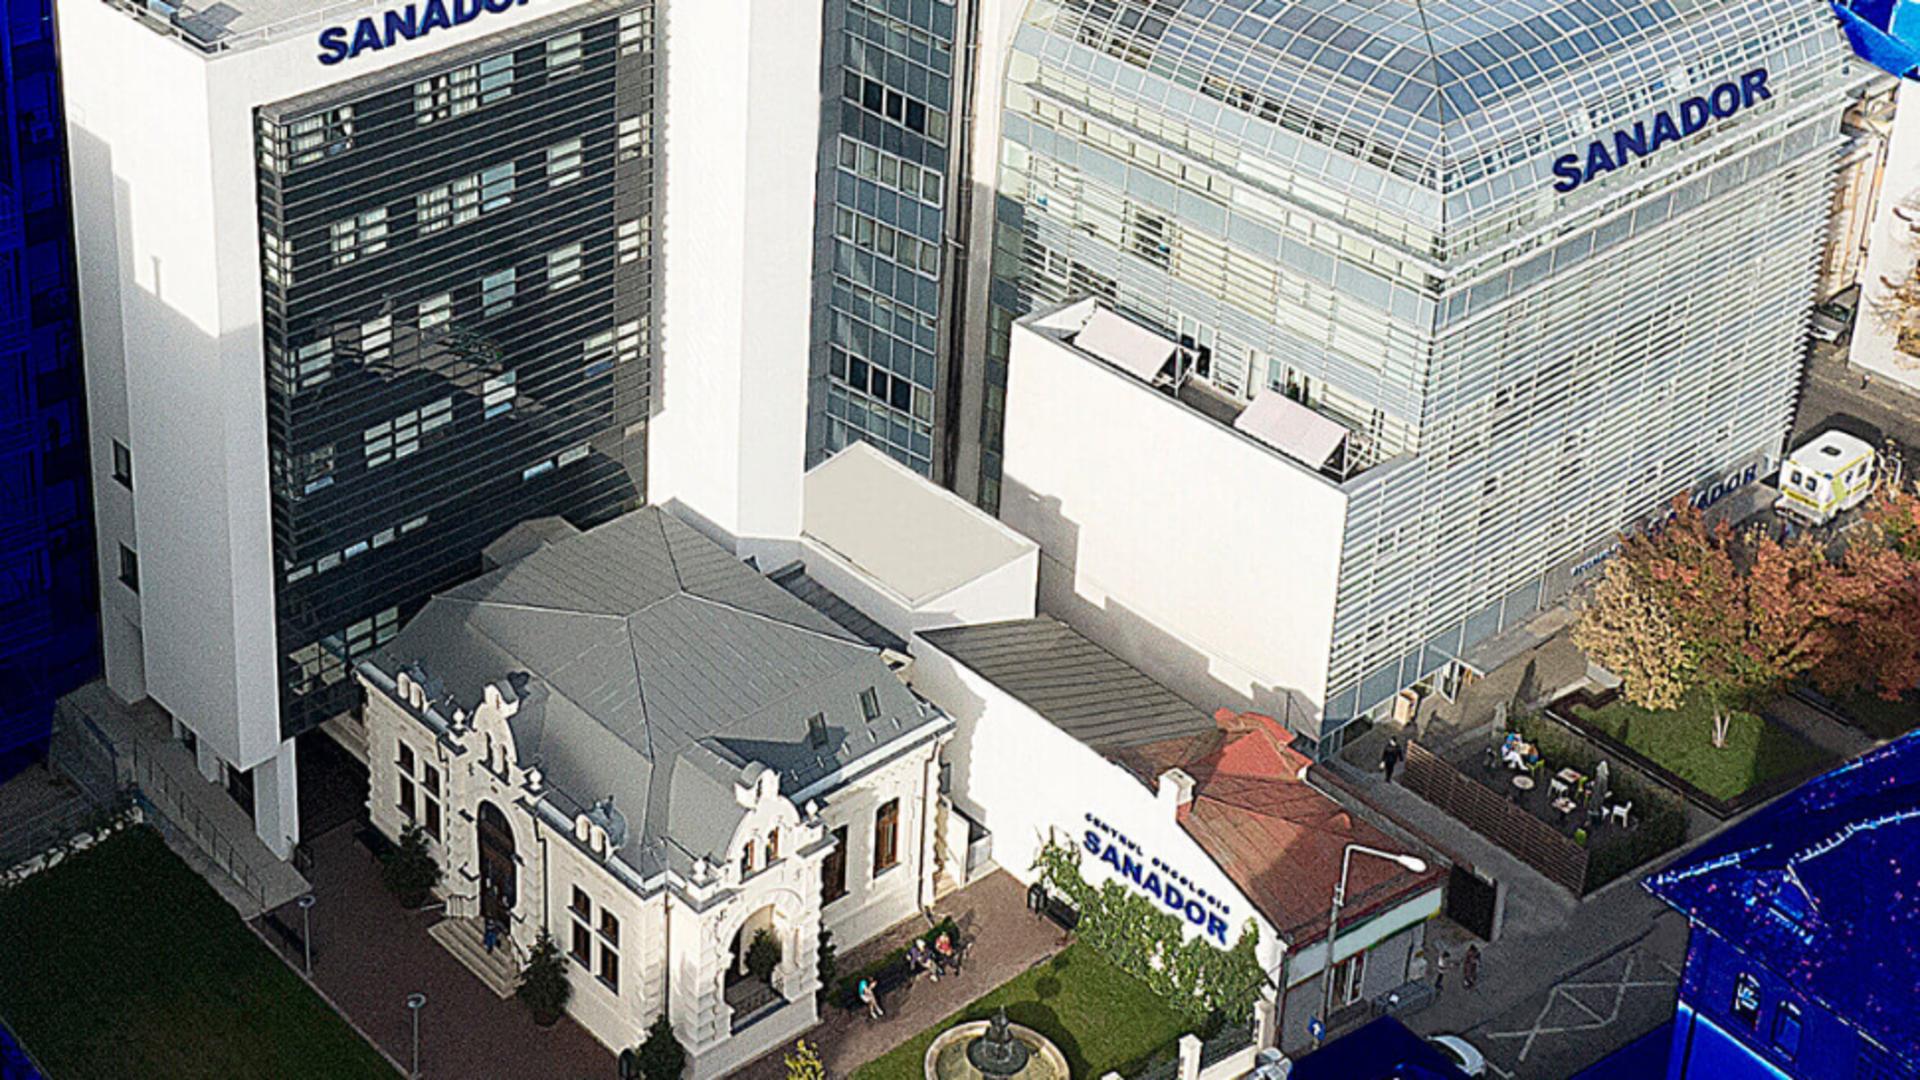 Spitalul Sanador de pe strada Sevastopol este construit în cea mai aglomerată zonă a centrului Bucureștiului